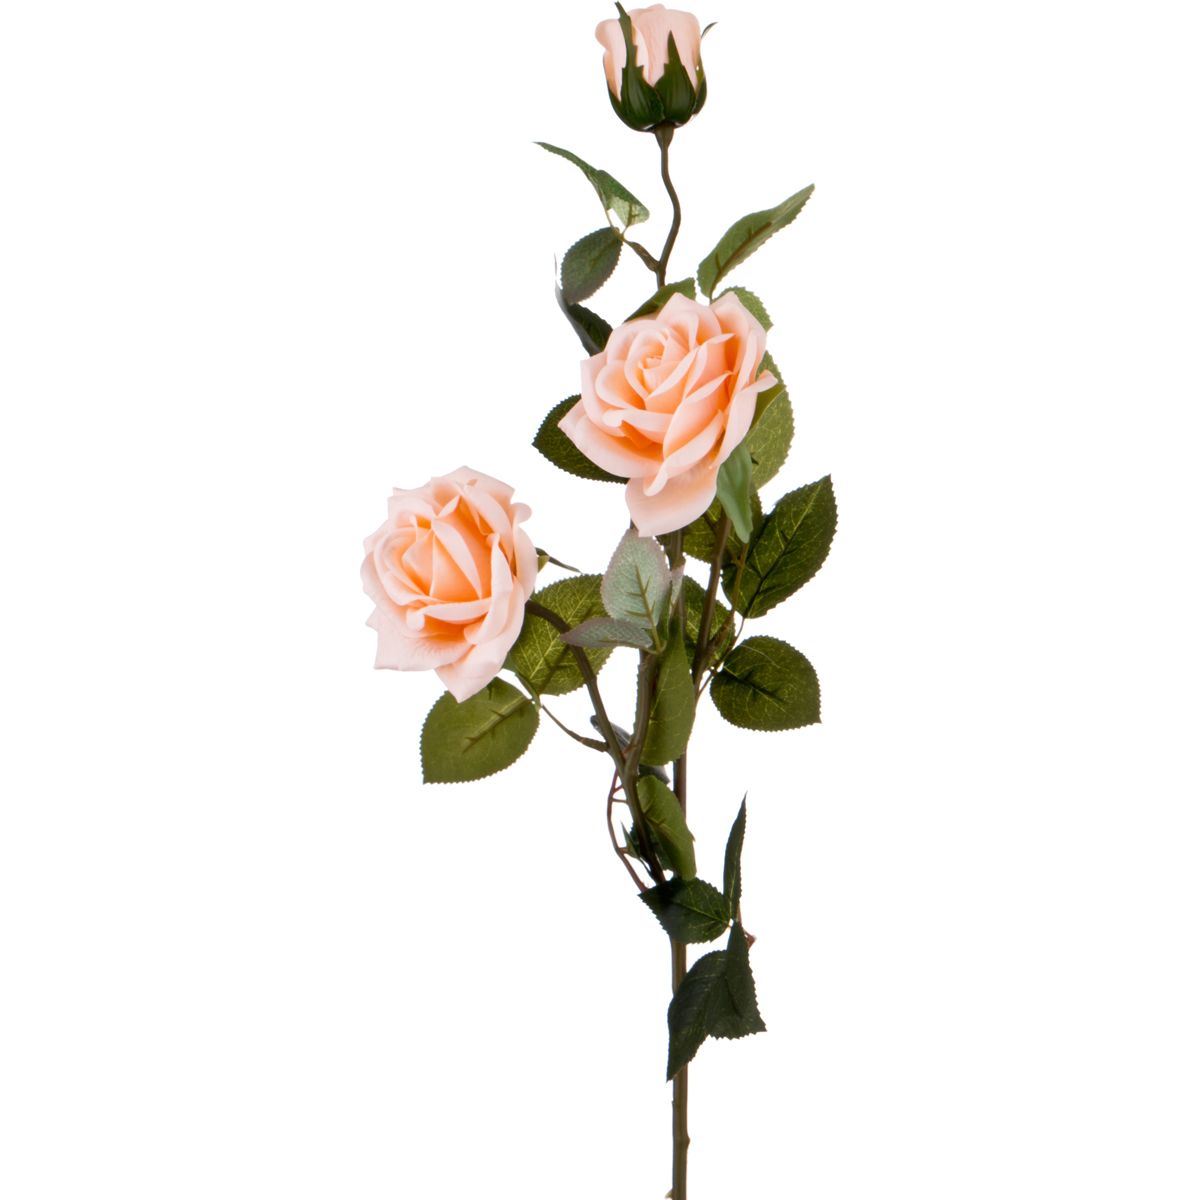 Искусственный цветок Роза (74 см), размер 74 см hpff378690 Искусственный цветок Роза (74 см) - фото 1